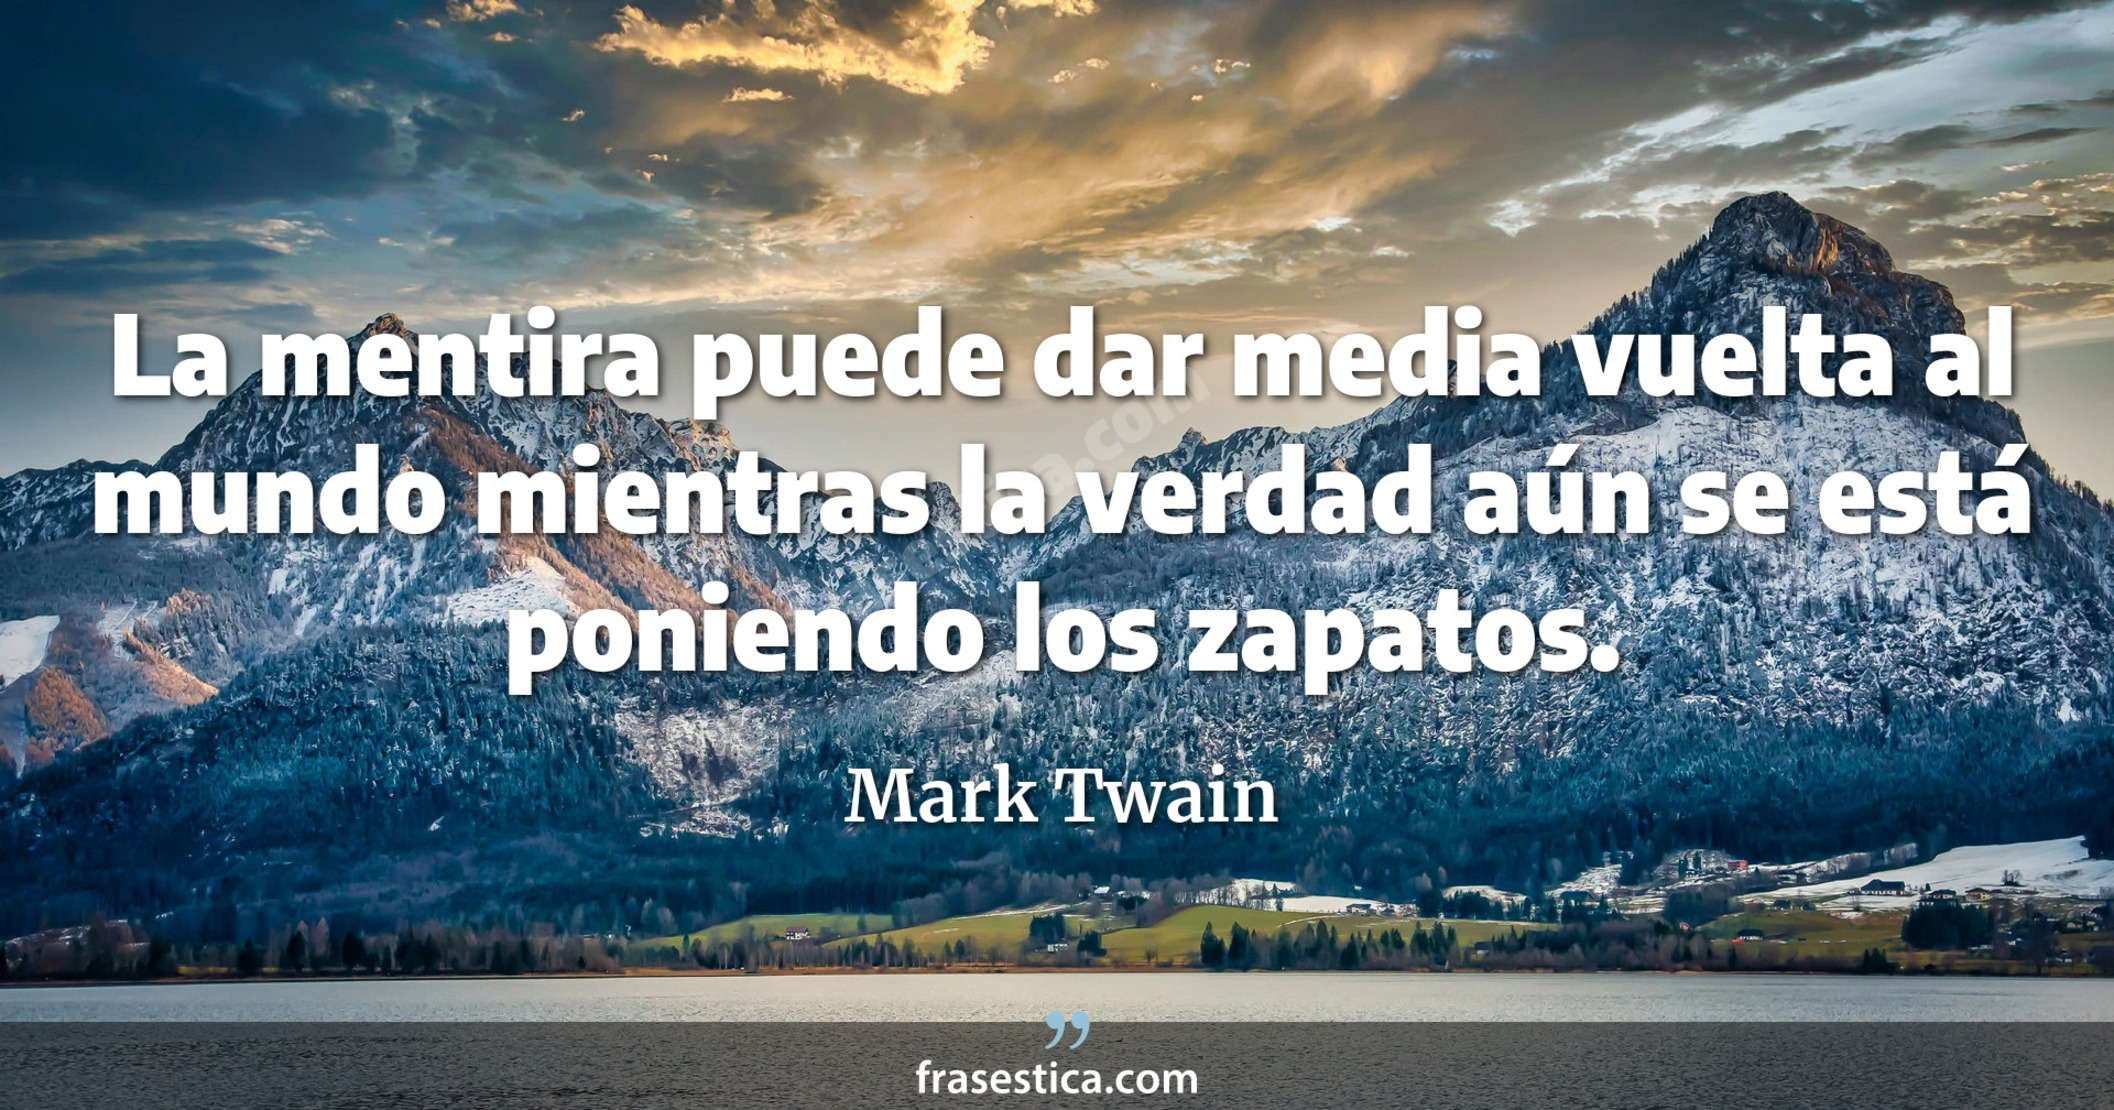 La mentira puede dar media vuelta al mundo mientras la verdad aún se está poniendo los zapatos. - Mark Twain